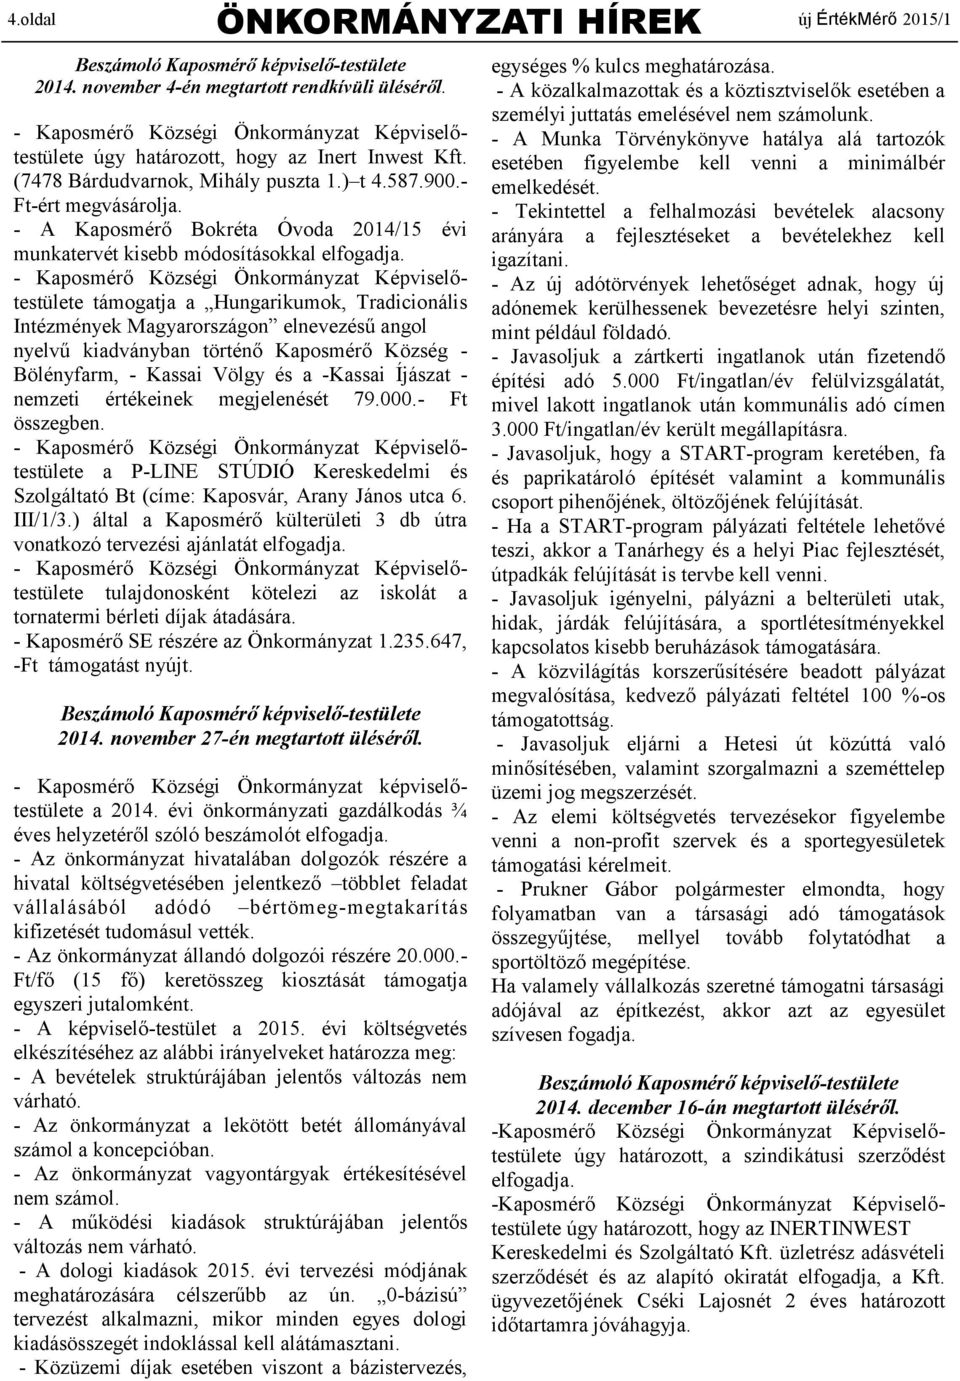 - A Kaposmérő Bokréta Óvoda 2014/15 évi munkatervét kisebb módosításokkal elfogadja.